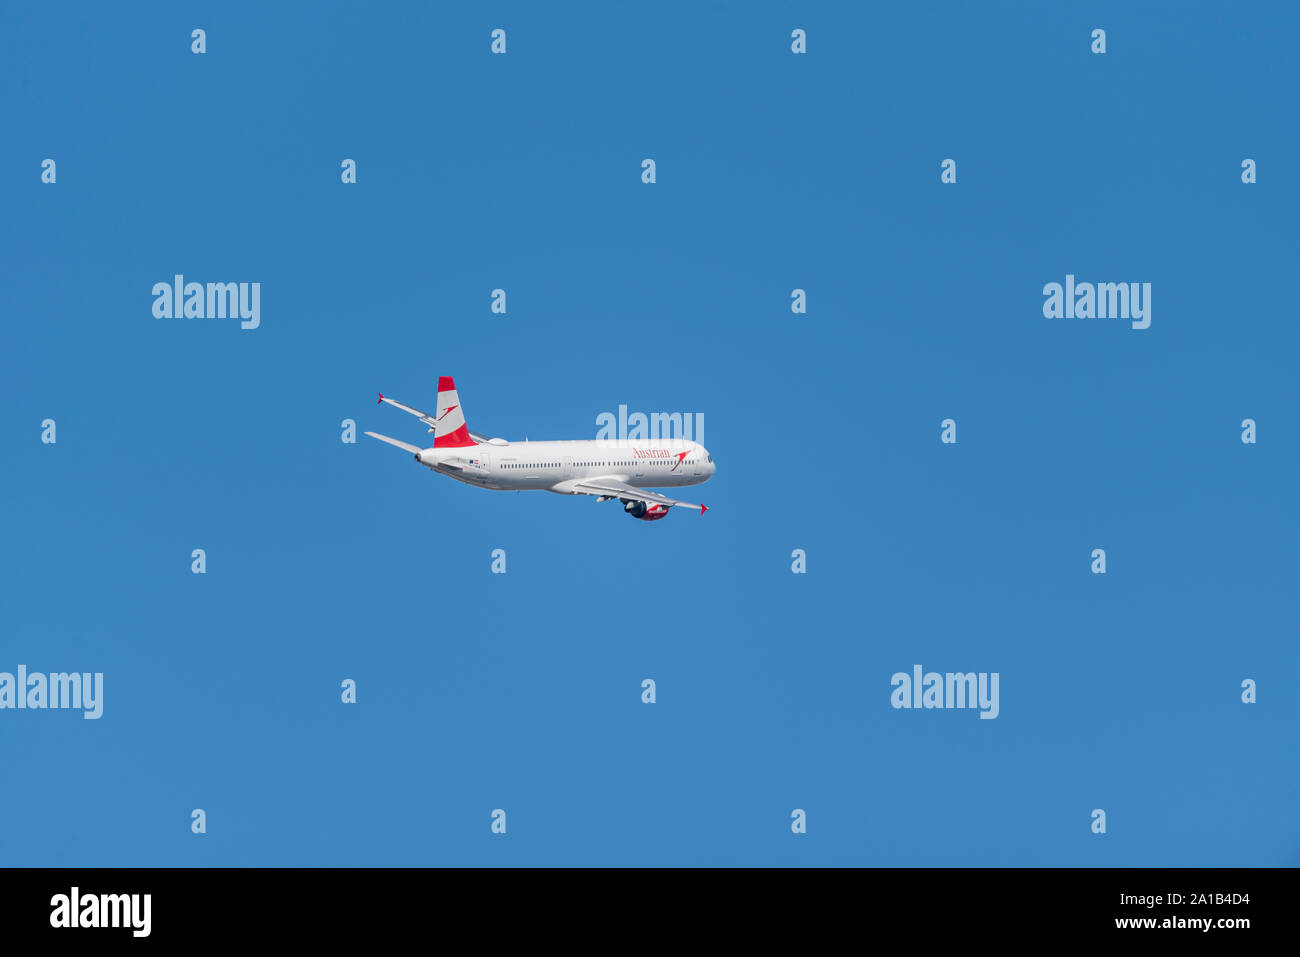 Austrian Airlines Airbus A321 avion de ligne à réaction OE-LBA décollant de l'aéroport de Londres Heathrow, Londres, Royaume-Uni dans le ciel bleu Banque D'Images